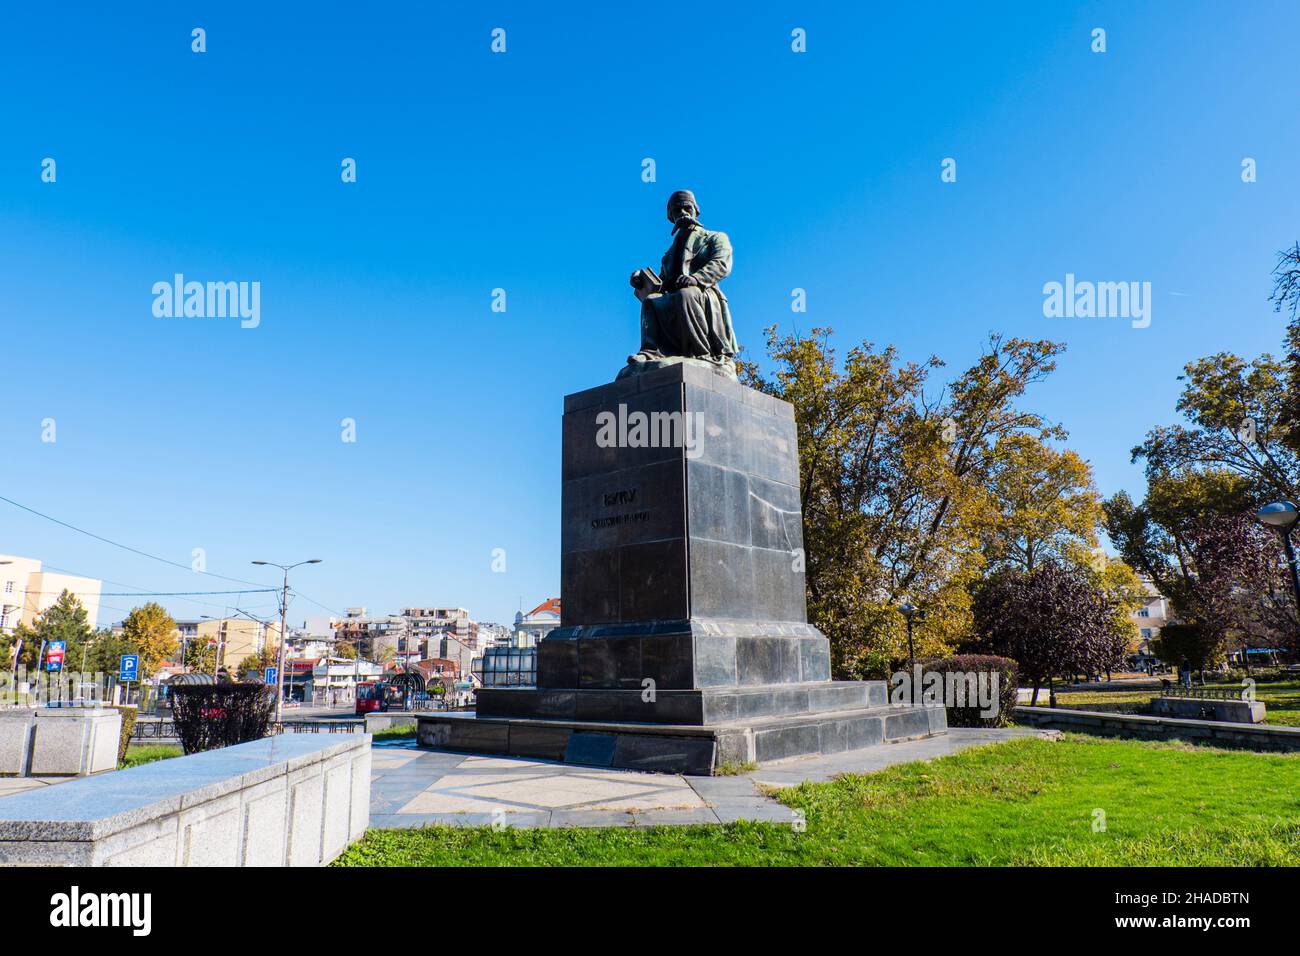 Spomenik Vuk Karadžić, Vuk Kradzic memorial statue, Park Ćirila i Metodija, Palilula, Belgrade, Serbia Stock Photo